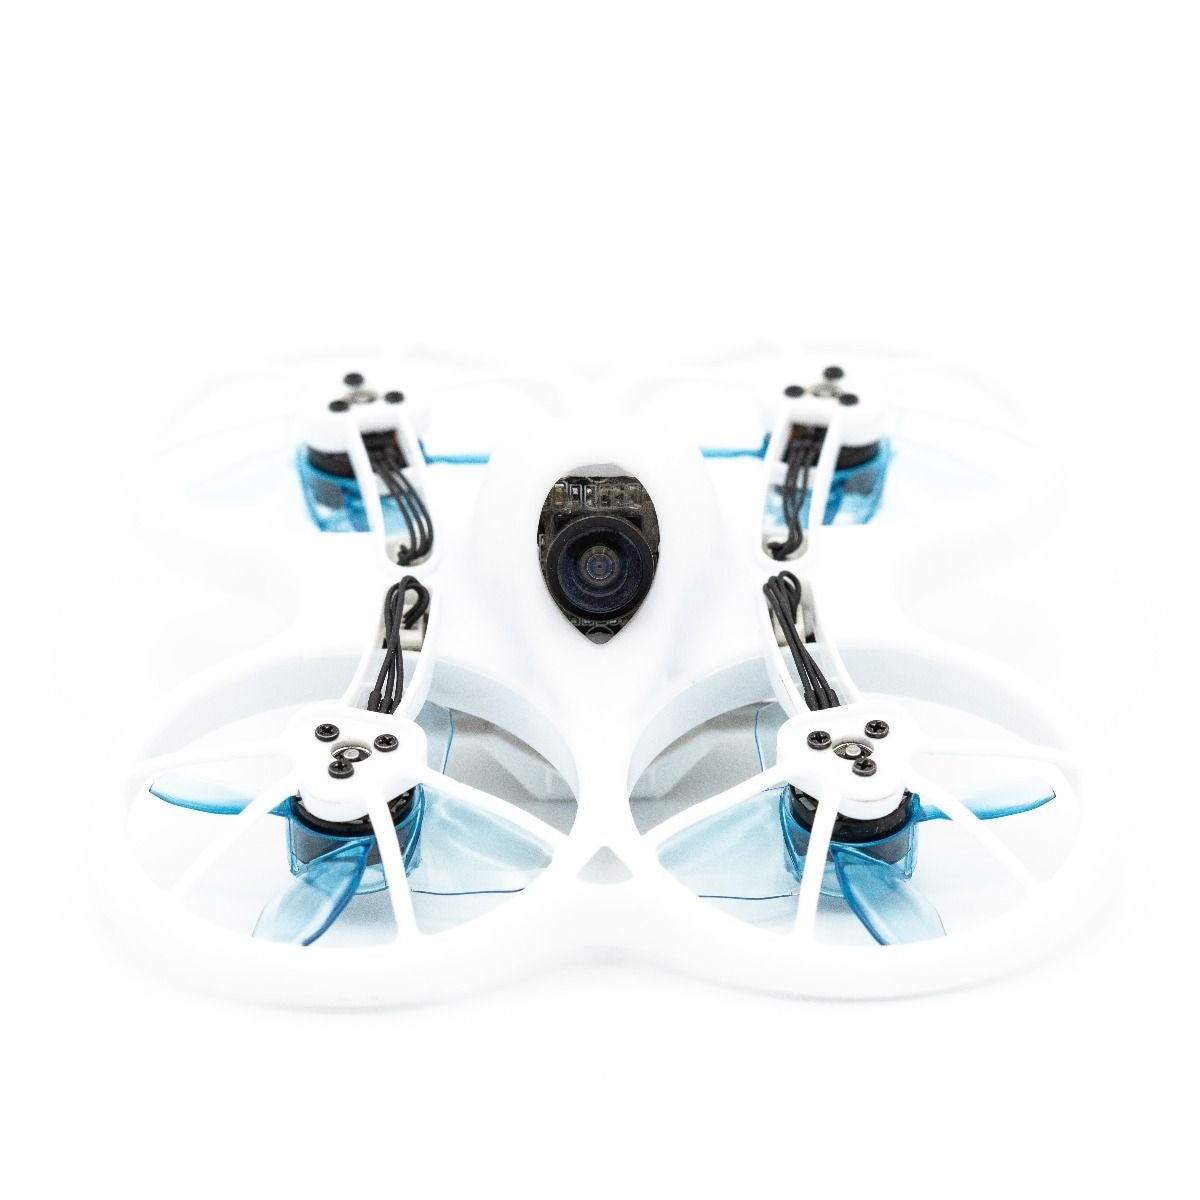 EMAX Avan Tinyhawk 4-Blade Turtlemode Propeller (40mm - Set of 4) 6 - EMAX - Drone Authority